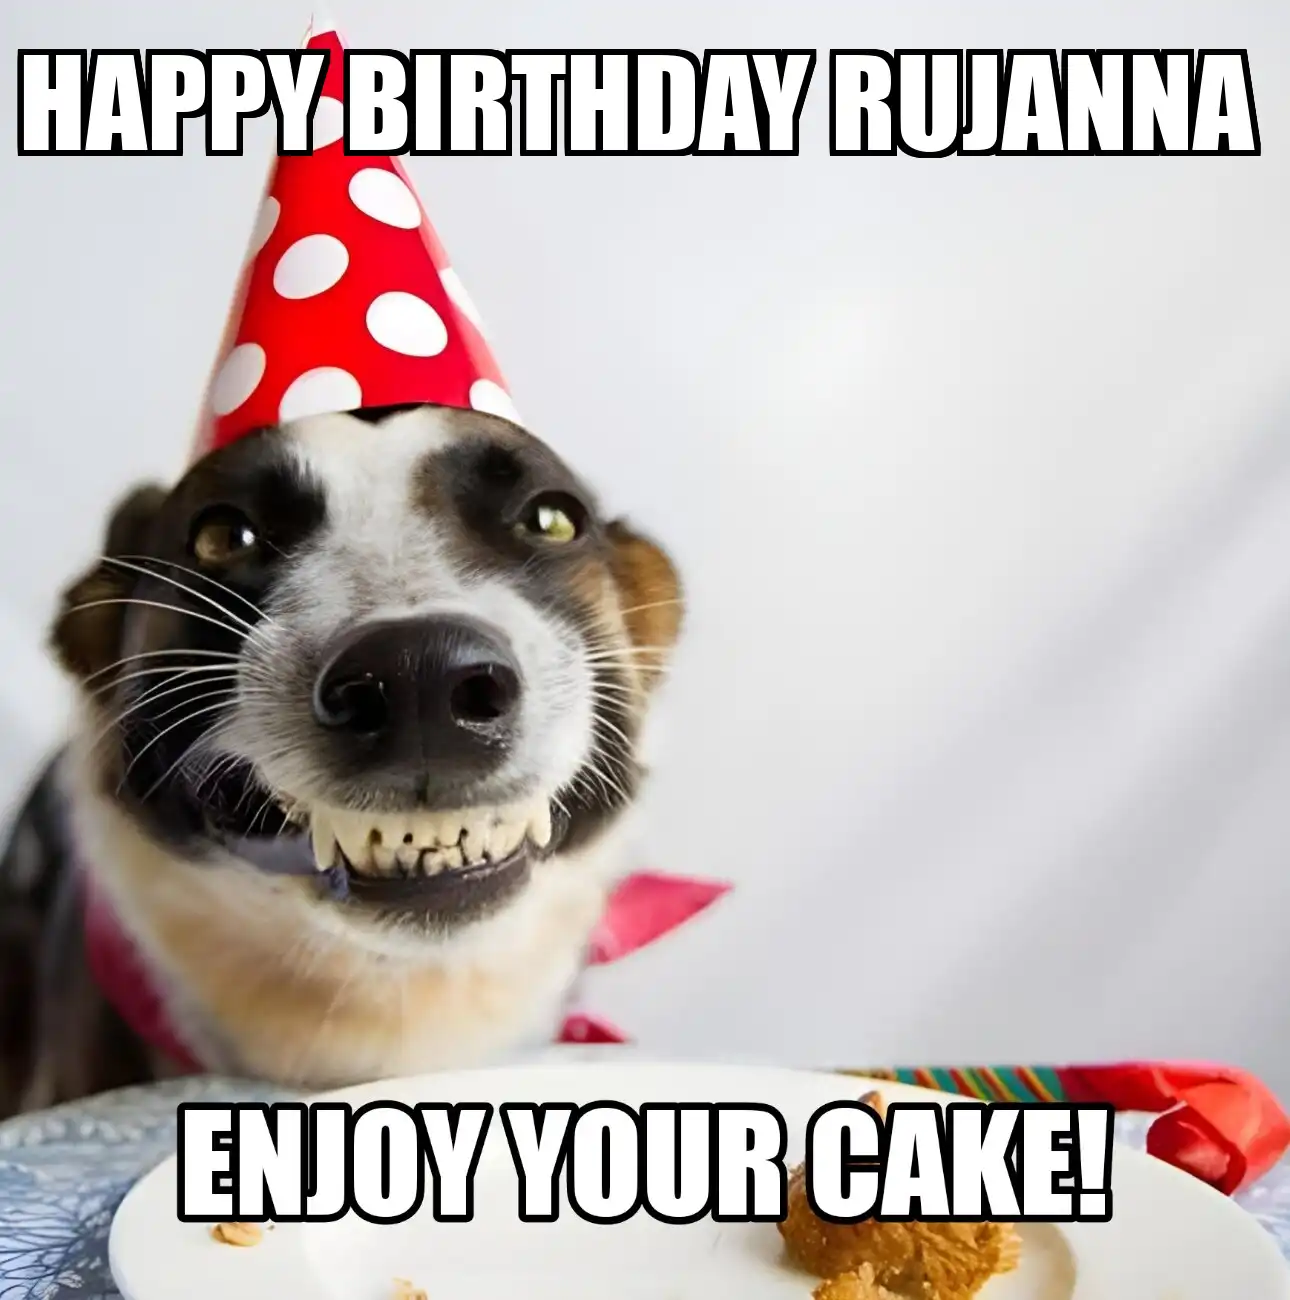 Happy Birthday Rujanna Enjoy Your Cake Dog Meme